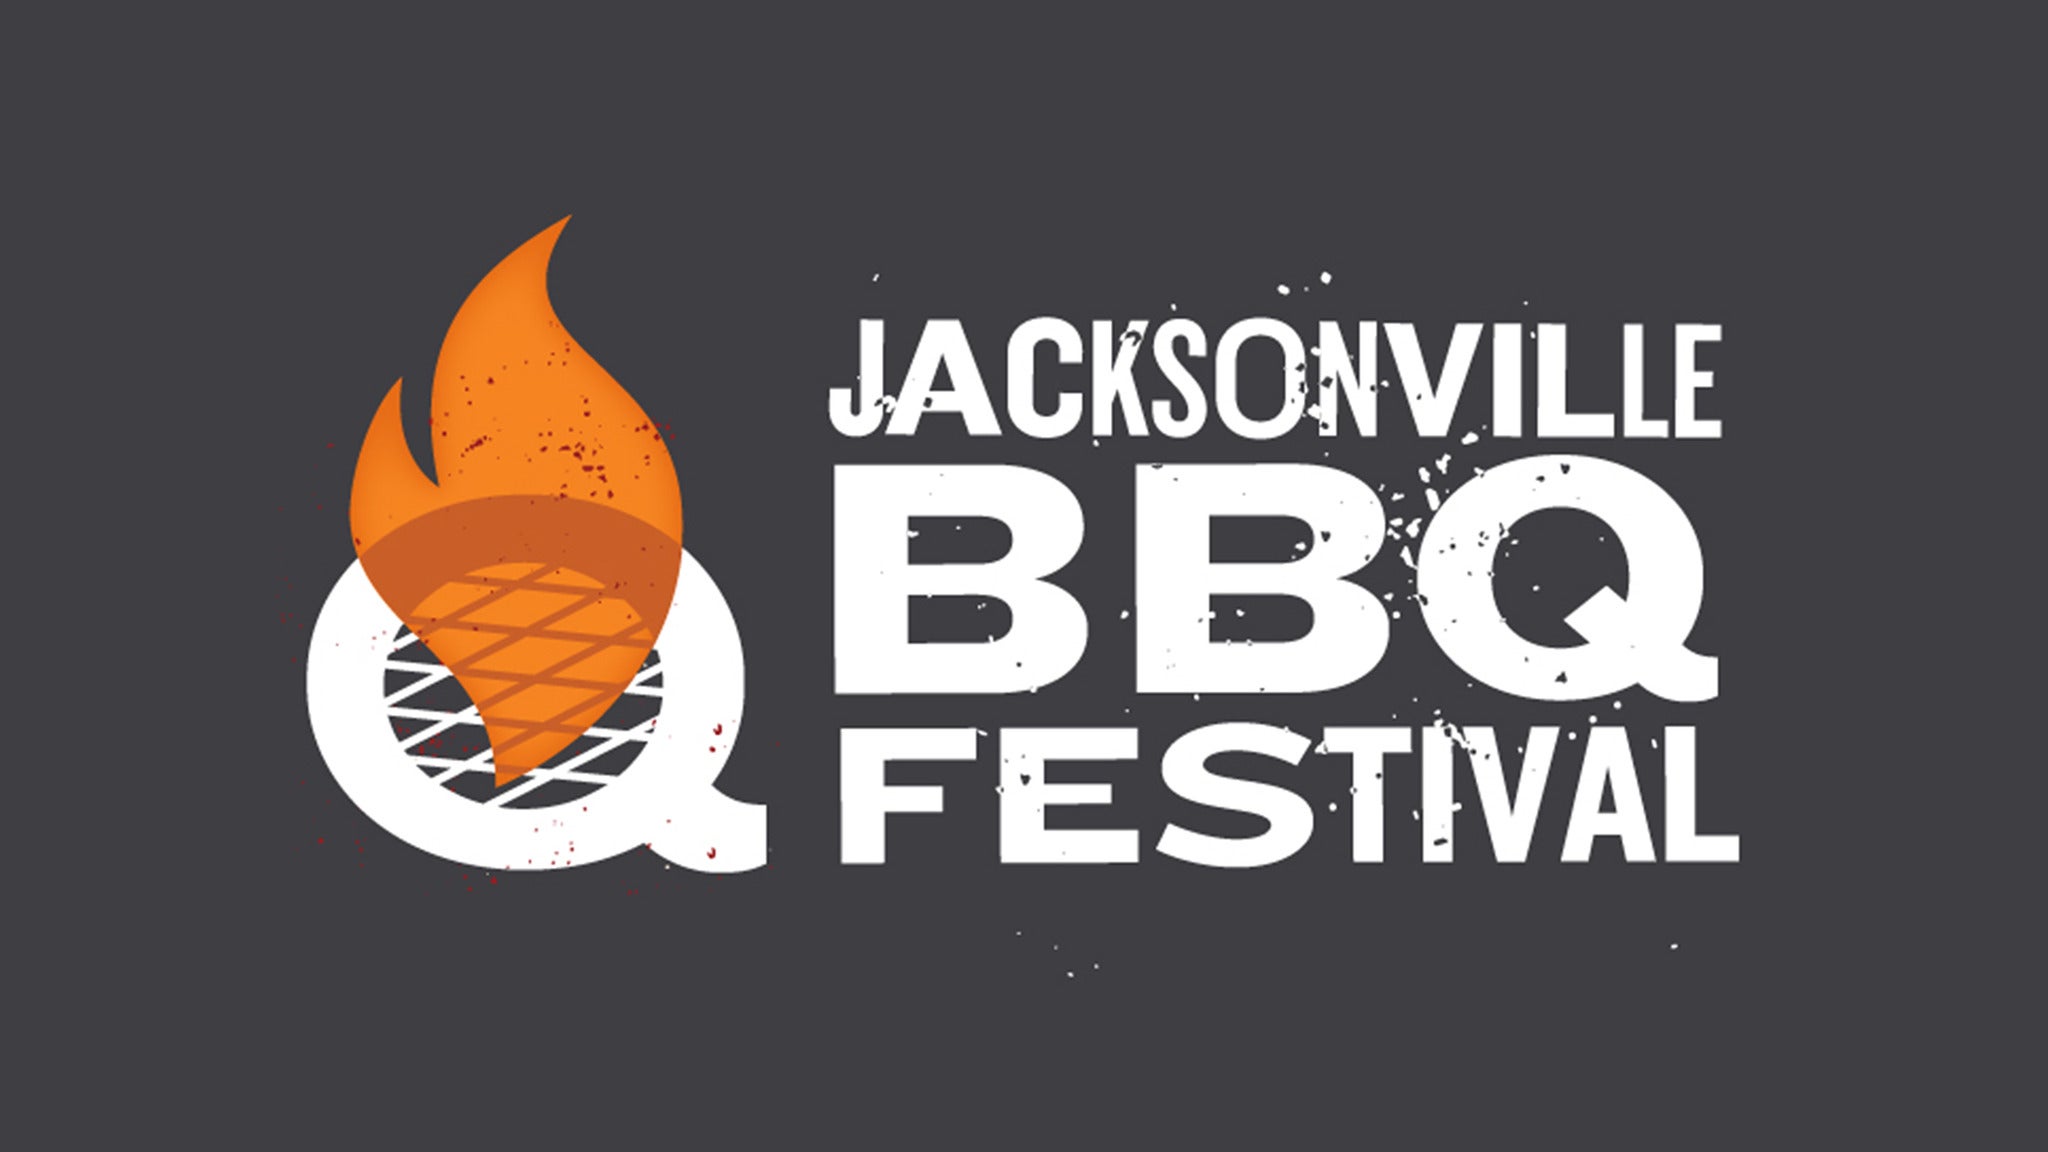 Jacksonville BBQ Festival Session 4 in Jacksonville promo photo for Stadium presale offer code